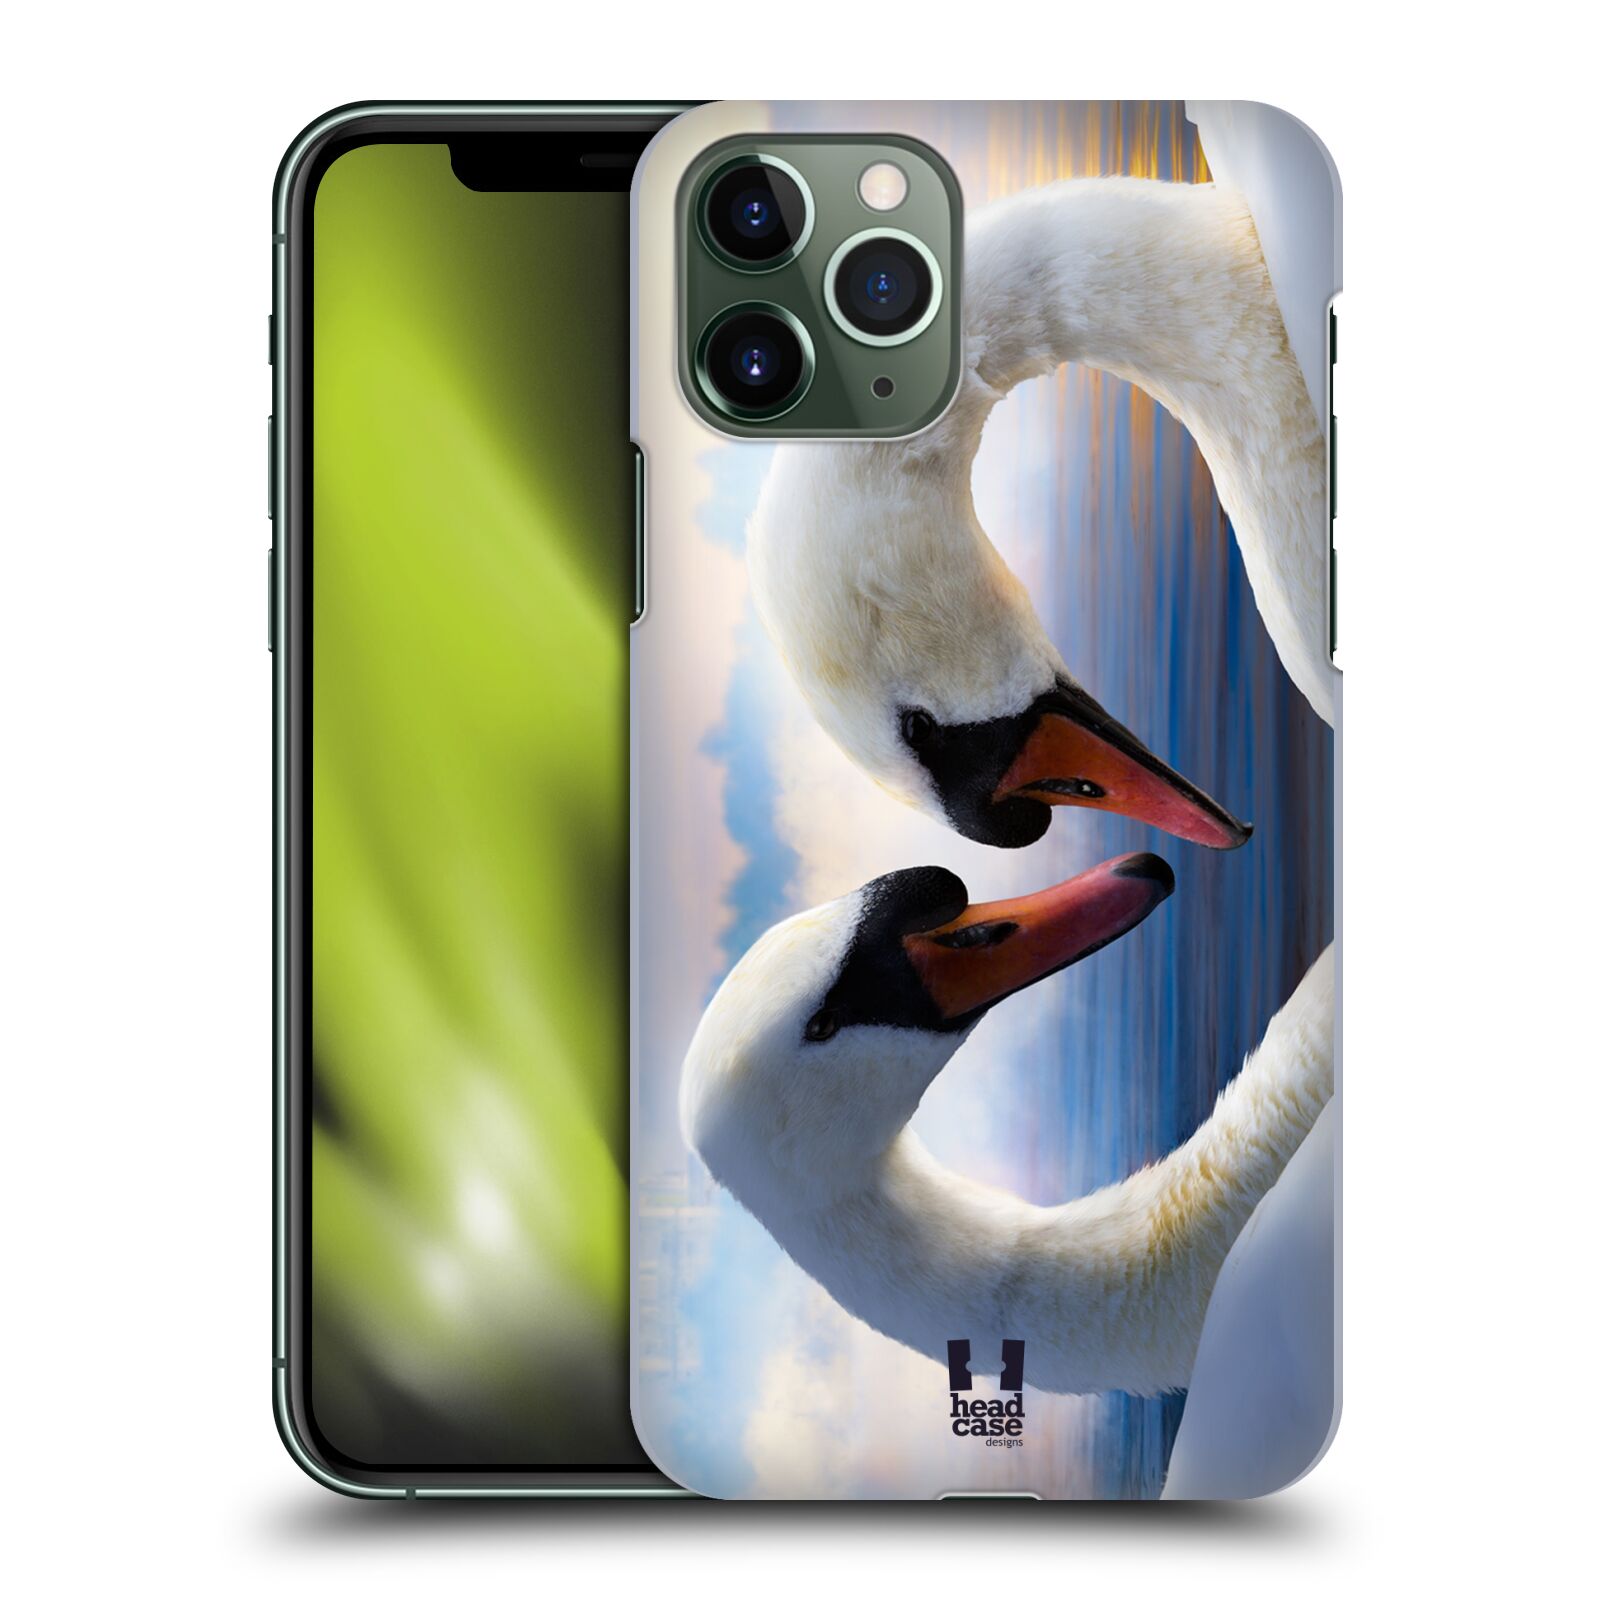 Pouzdro na mobil Apple Iphone 11 PRO - HEAD CASE - vzor Divočina, Divoký život a zvířata foto ZAMILOVANÉ LABUTĚ, LÁSKA